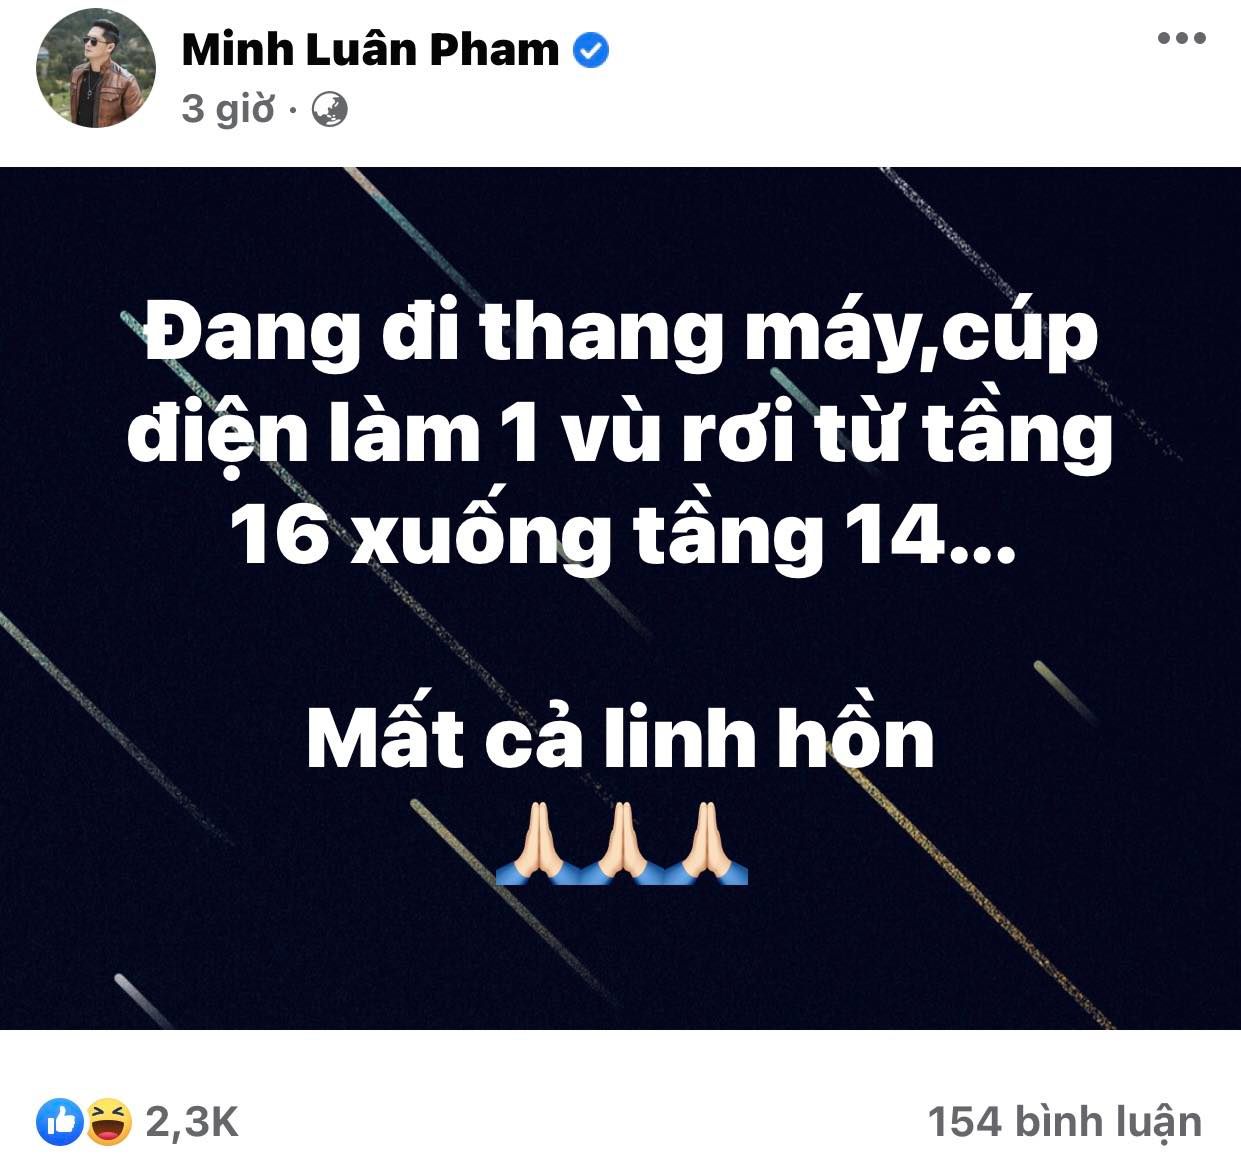 Nam tài tử nổi tiếng màn ảnh Việt 'mất cả hồn vía' khi gặp sự cố thang máy, rơi từ tầng 16 xuống - Ảnh 2